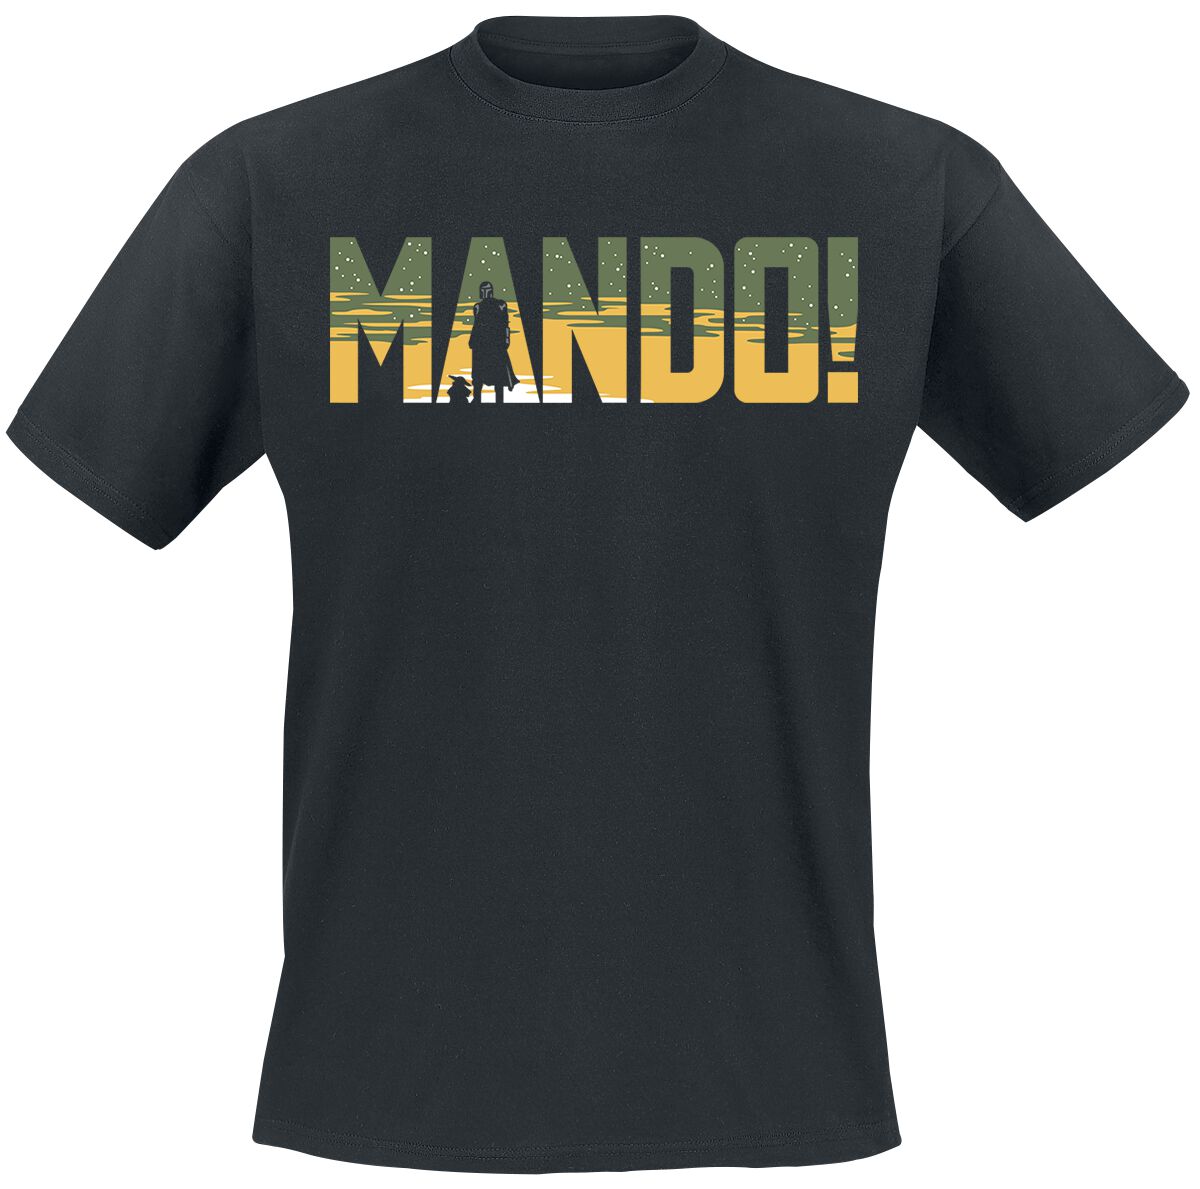 Star Wars T-Shirt - The Mandalorian - Season 3 - Mando - S bis XXL - für Männer - Größe XL - schwarz  - EMP exklusives Merchandise!